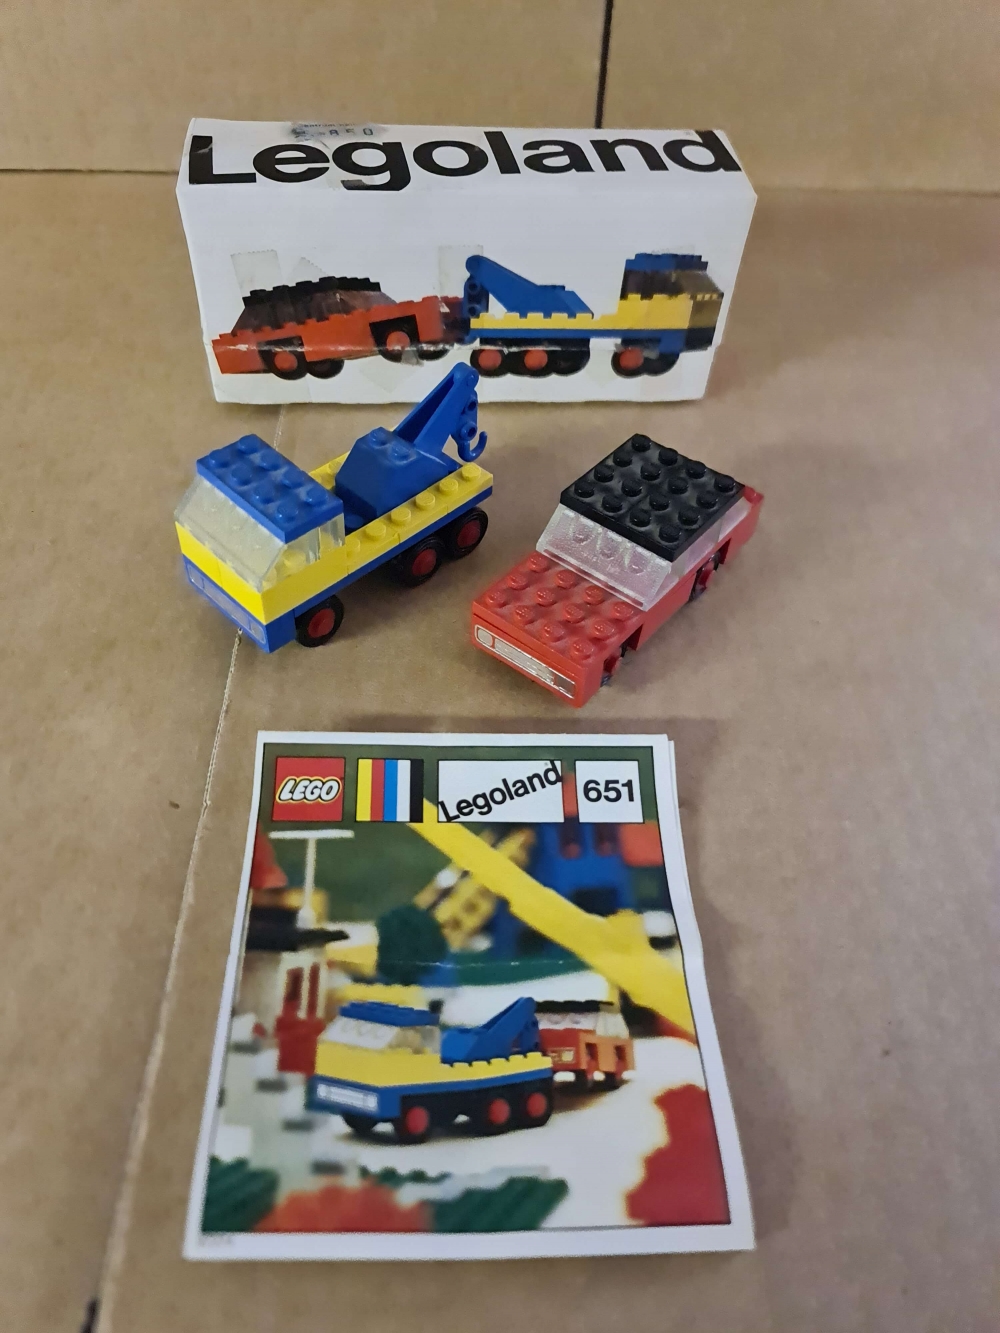 Sett 651 fra Lego Legoland serien.
Komplett med eske og manual.